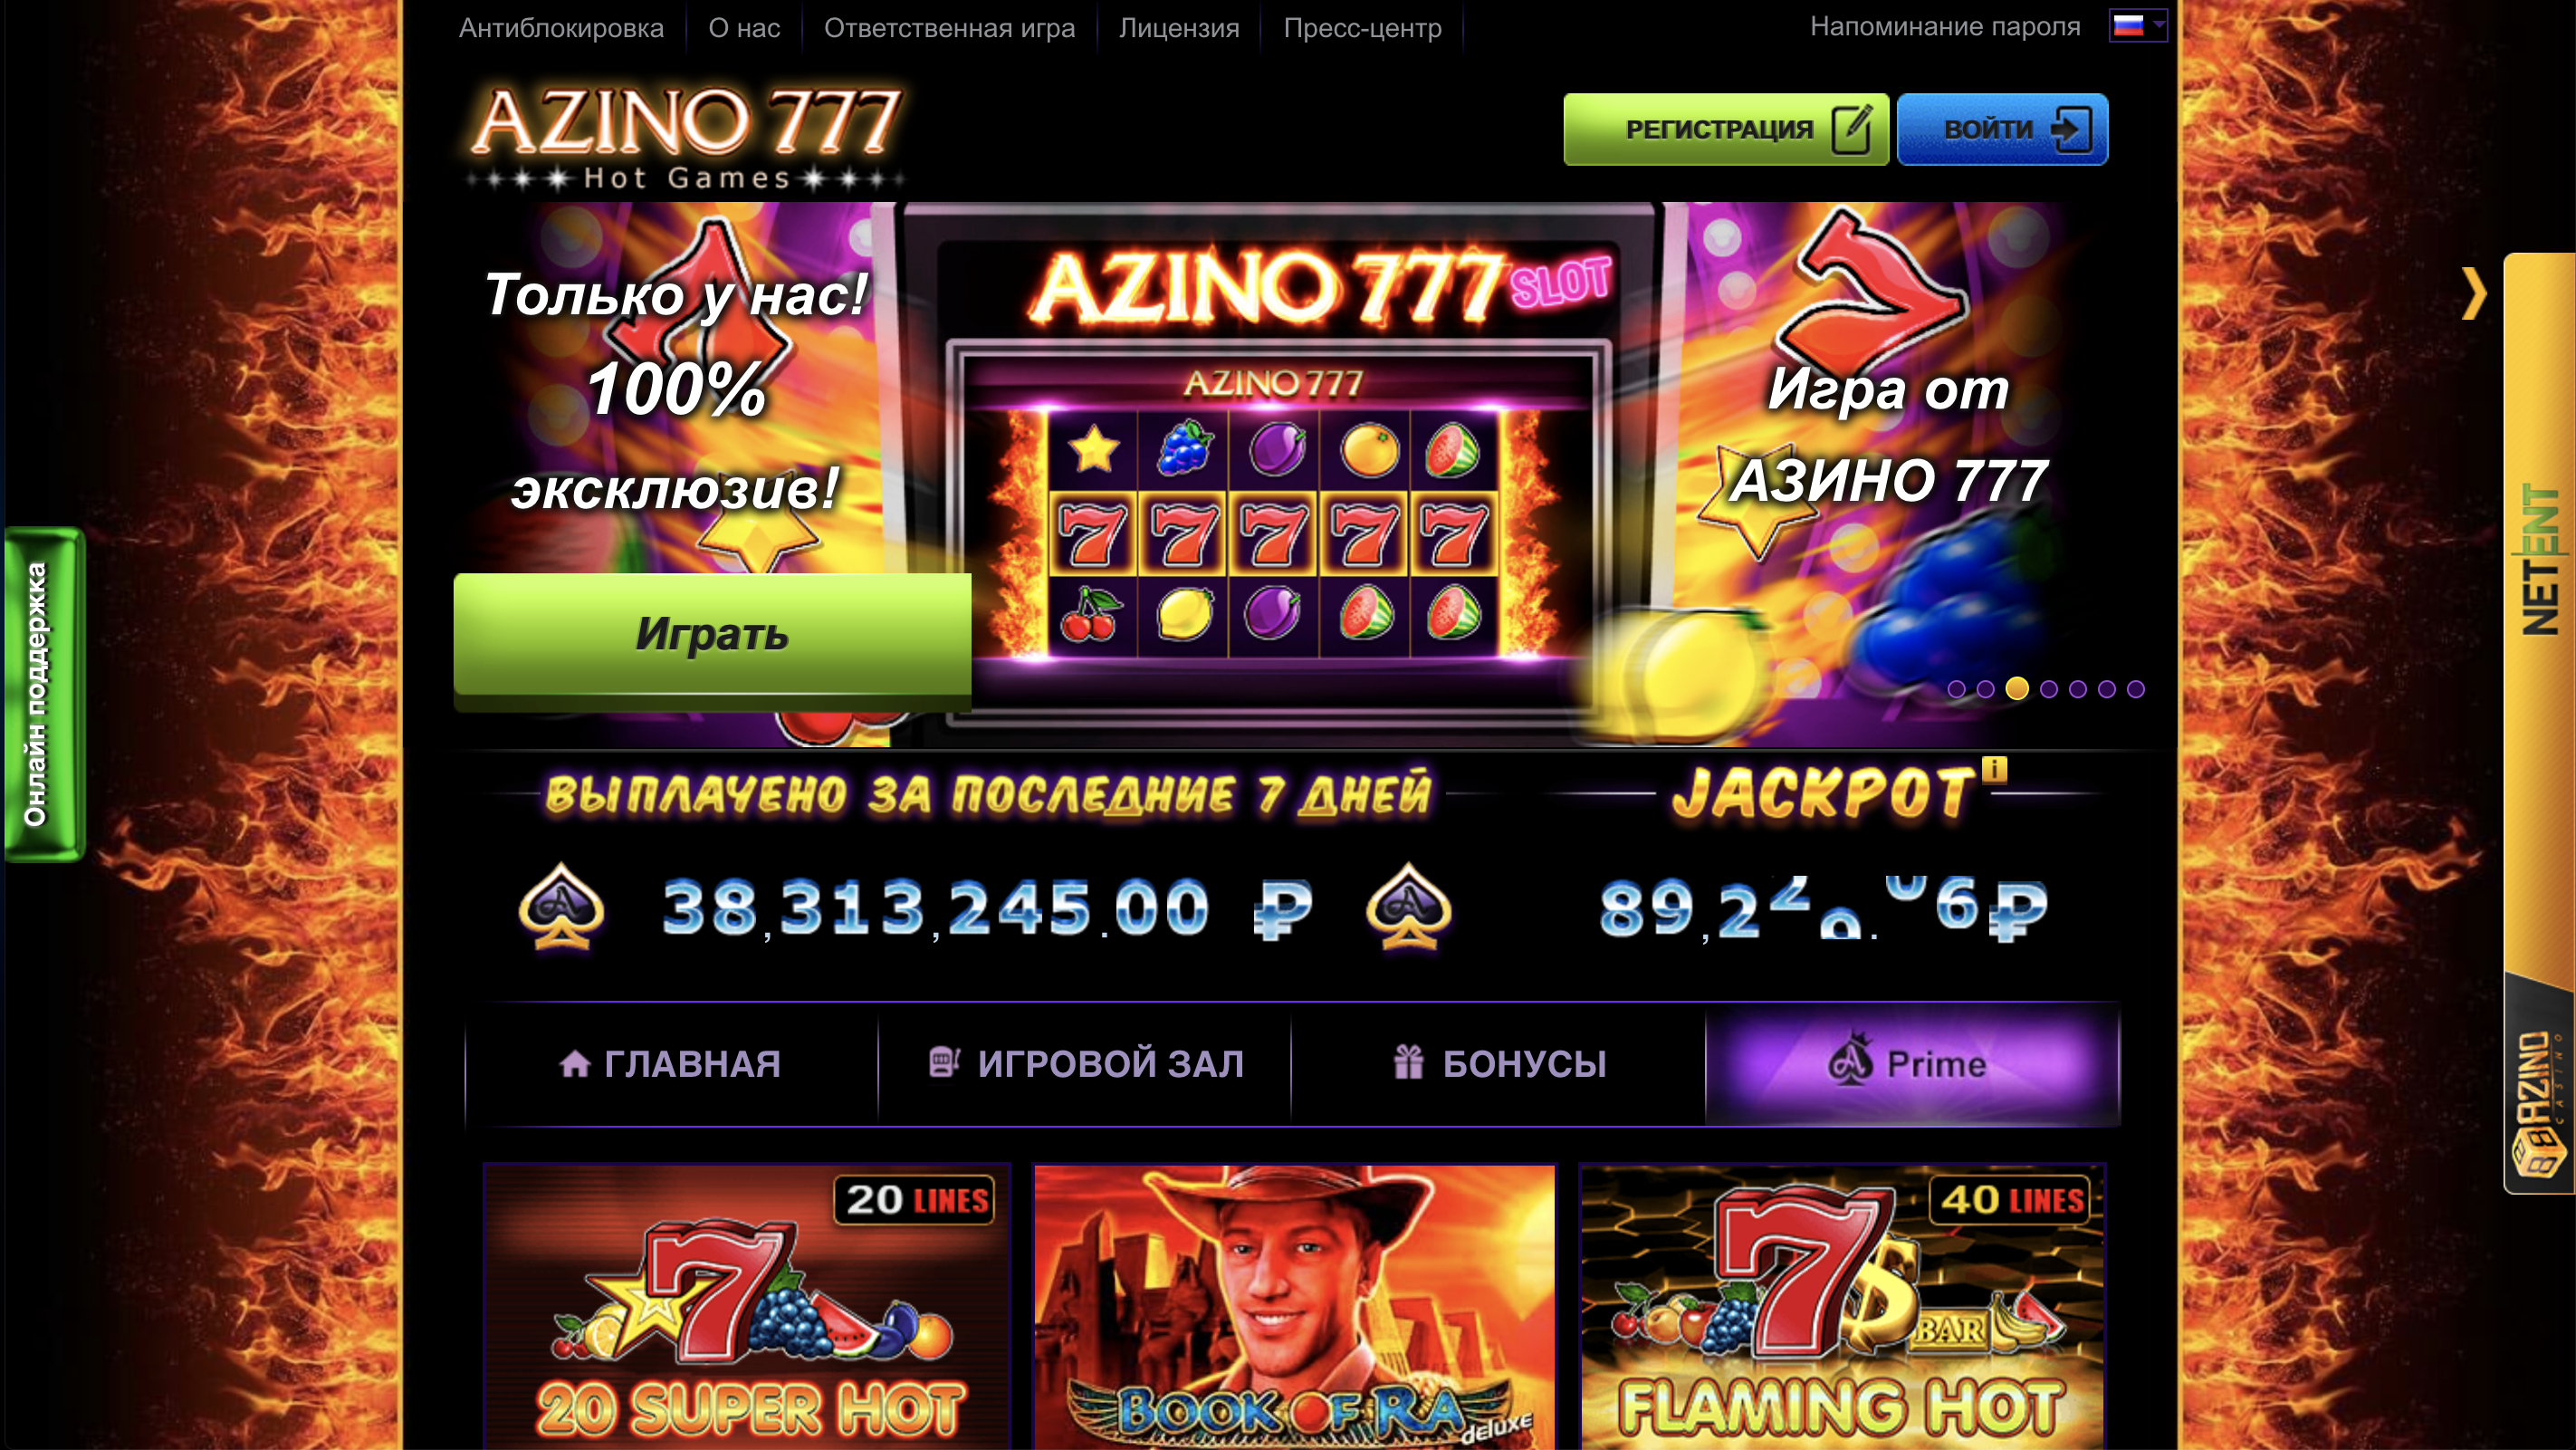 азино777 официальный сайт azino777 official ru com